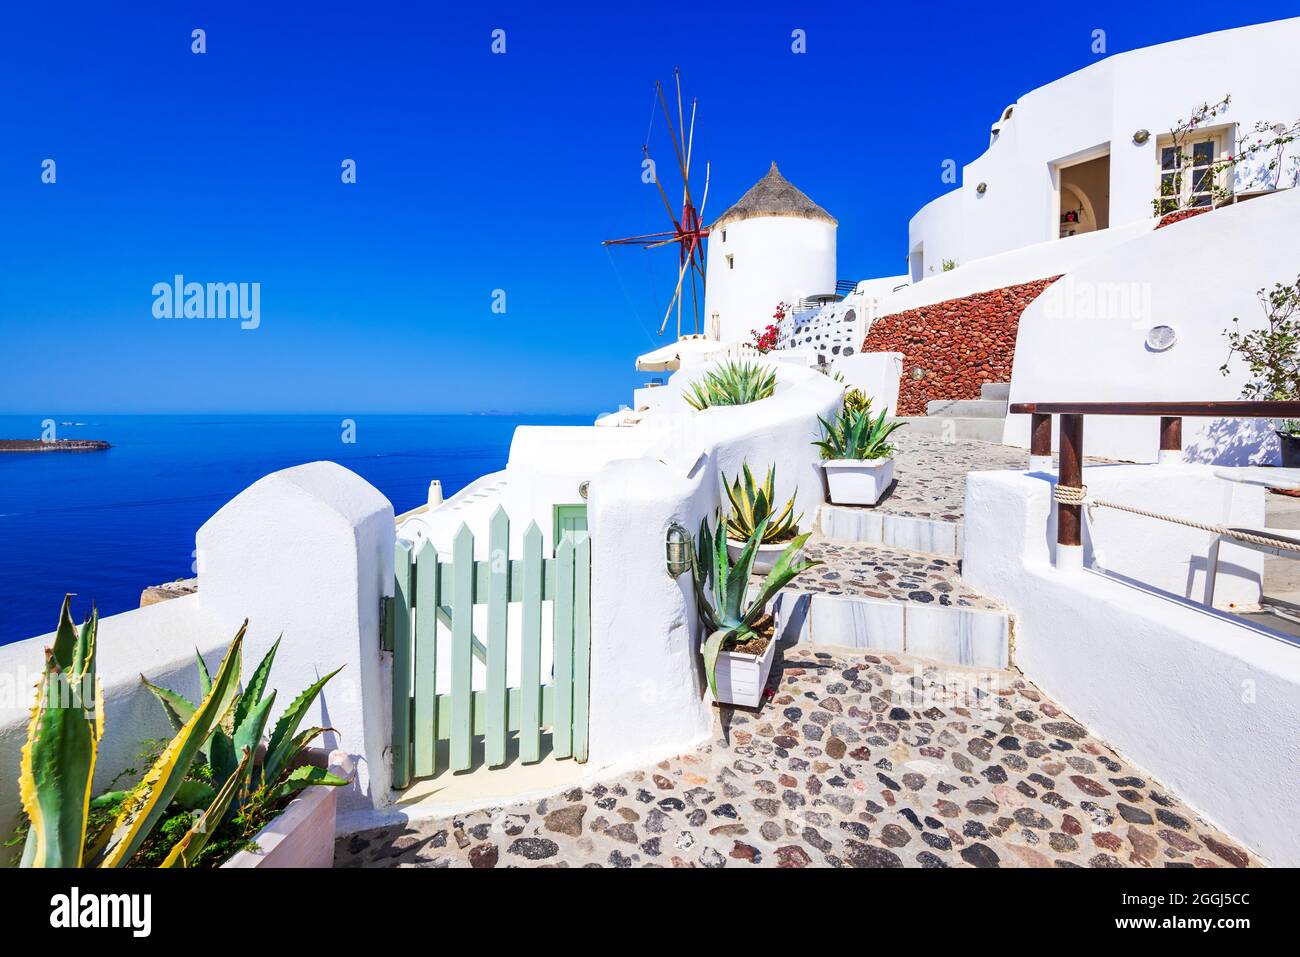 Oia - Santorini, Griechenland. Fantastische weiß getünchte Stadt auf Thira, griechische Kykladen, Ägäis. Urlaubsziele in Europa. Stockfoto